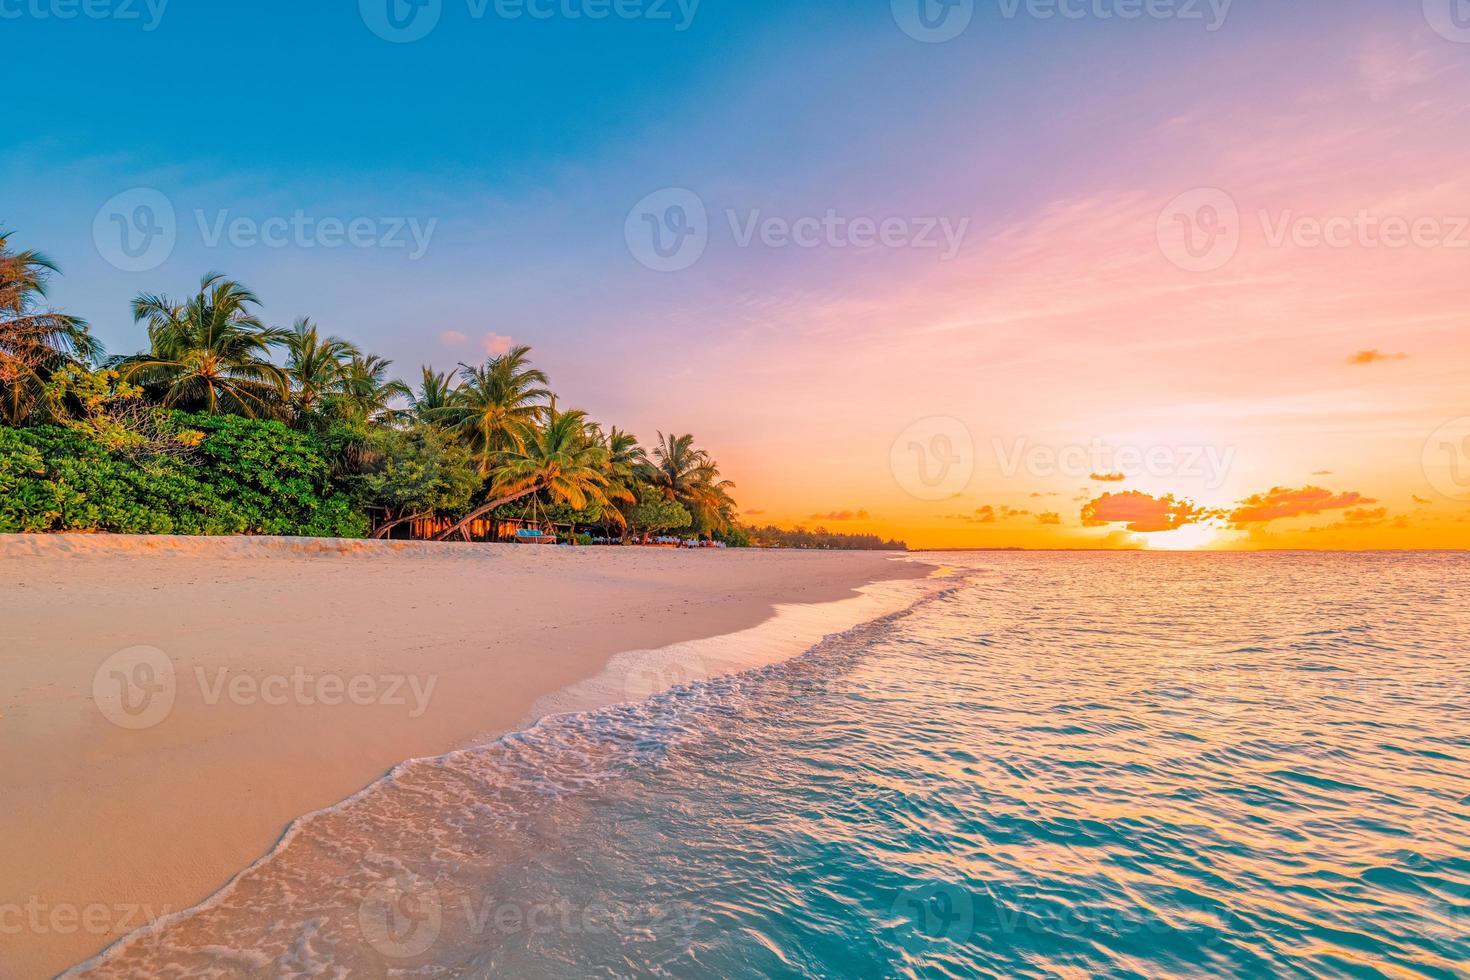 paisagem da praia da ilha tropical do paraíso. silhueta palmeiras lindo céu por do sol, fundo de praia do mar dos sonhos. viagens tranquilas férias relaxar turismo. closeup vista das ondas nascer do sol à beira-mar natureza foto